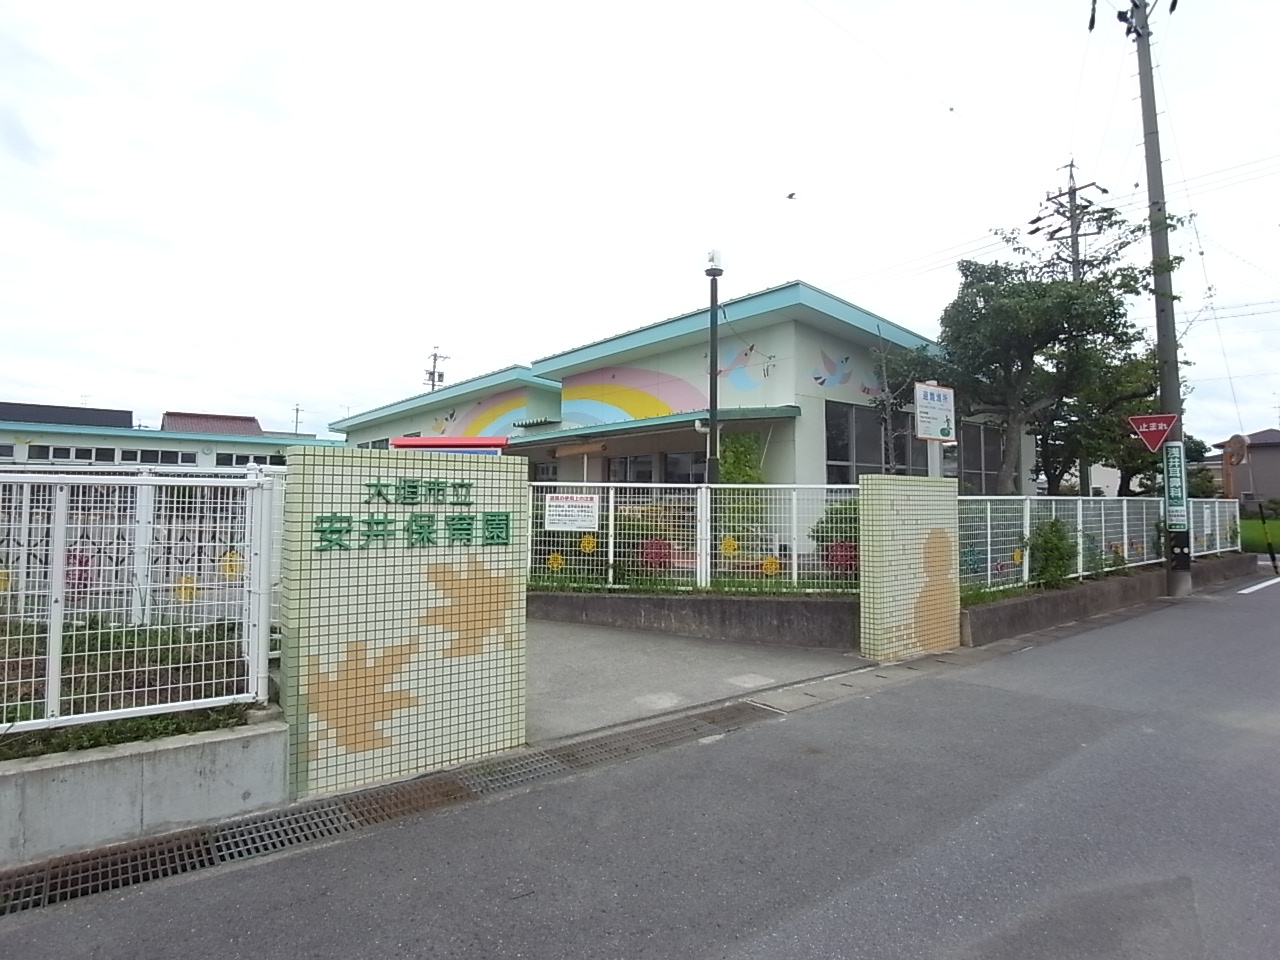 kindergarten ・ Nursery. Yasui nursery school (kindergarten ・ 689m to the nursery)